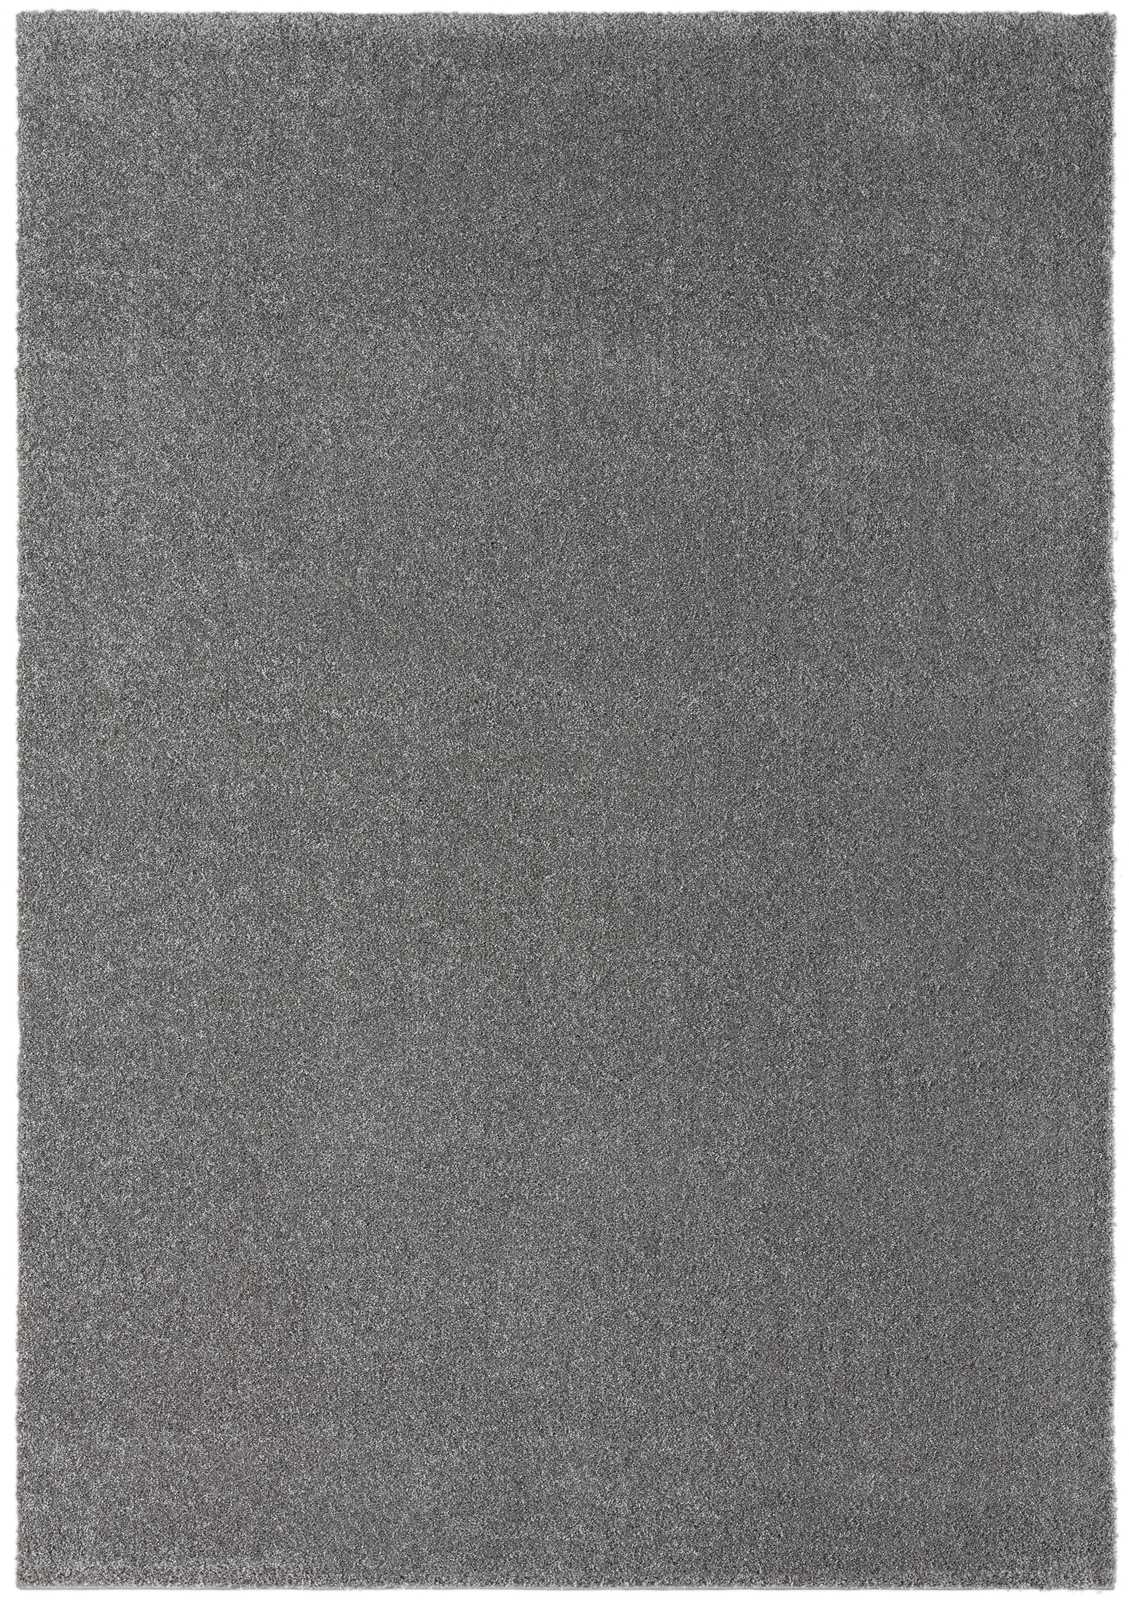             Tapis moelleux à poils courts gris - 230 x 160 cm
        